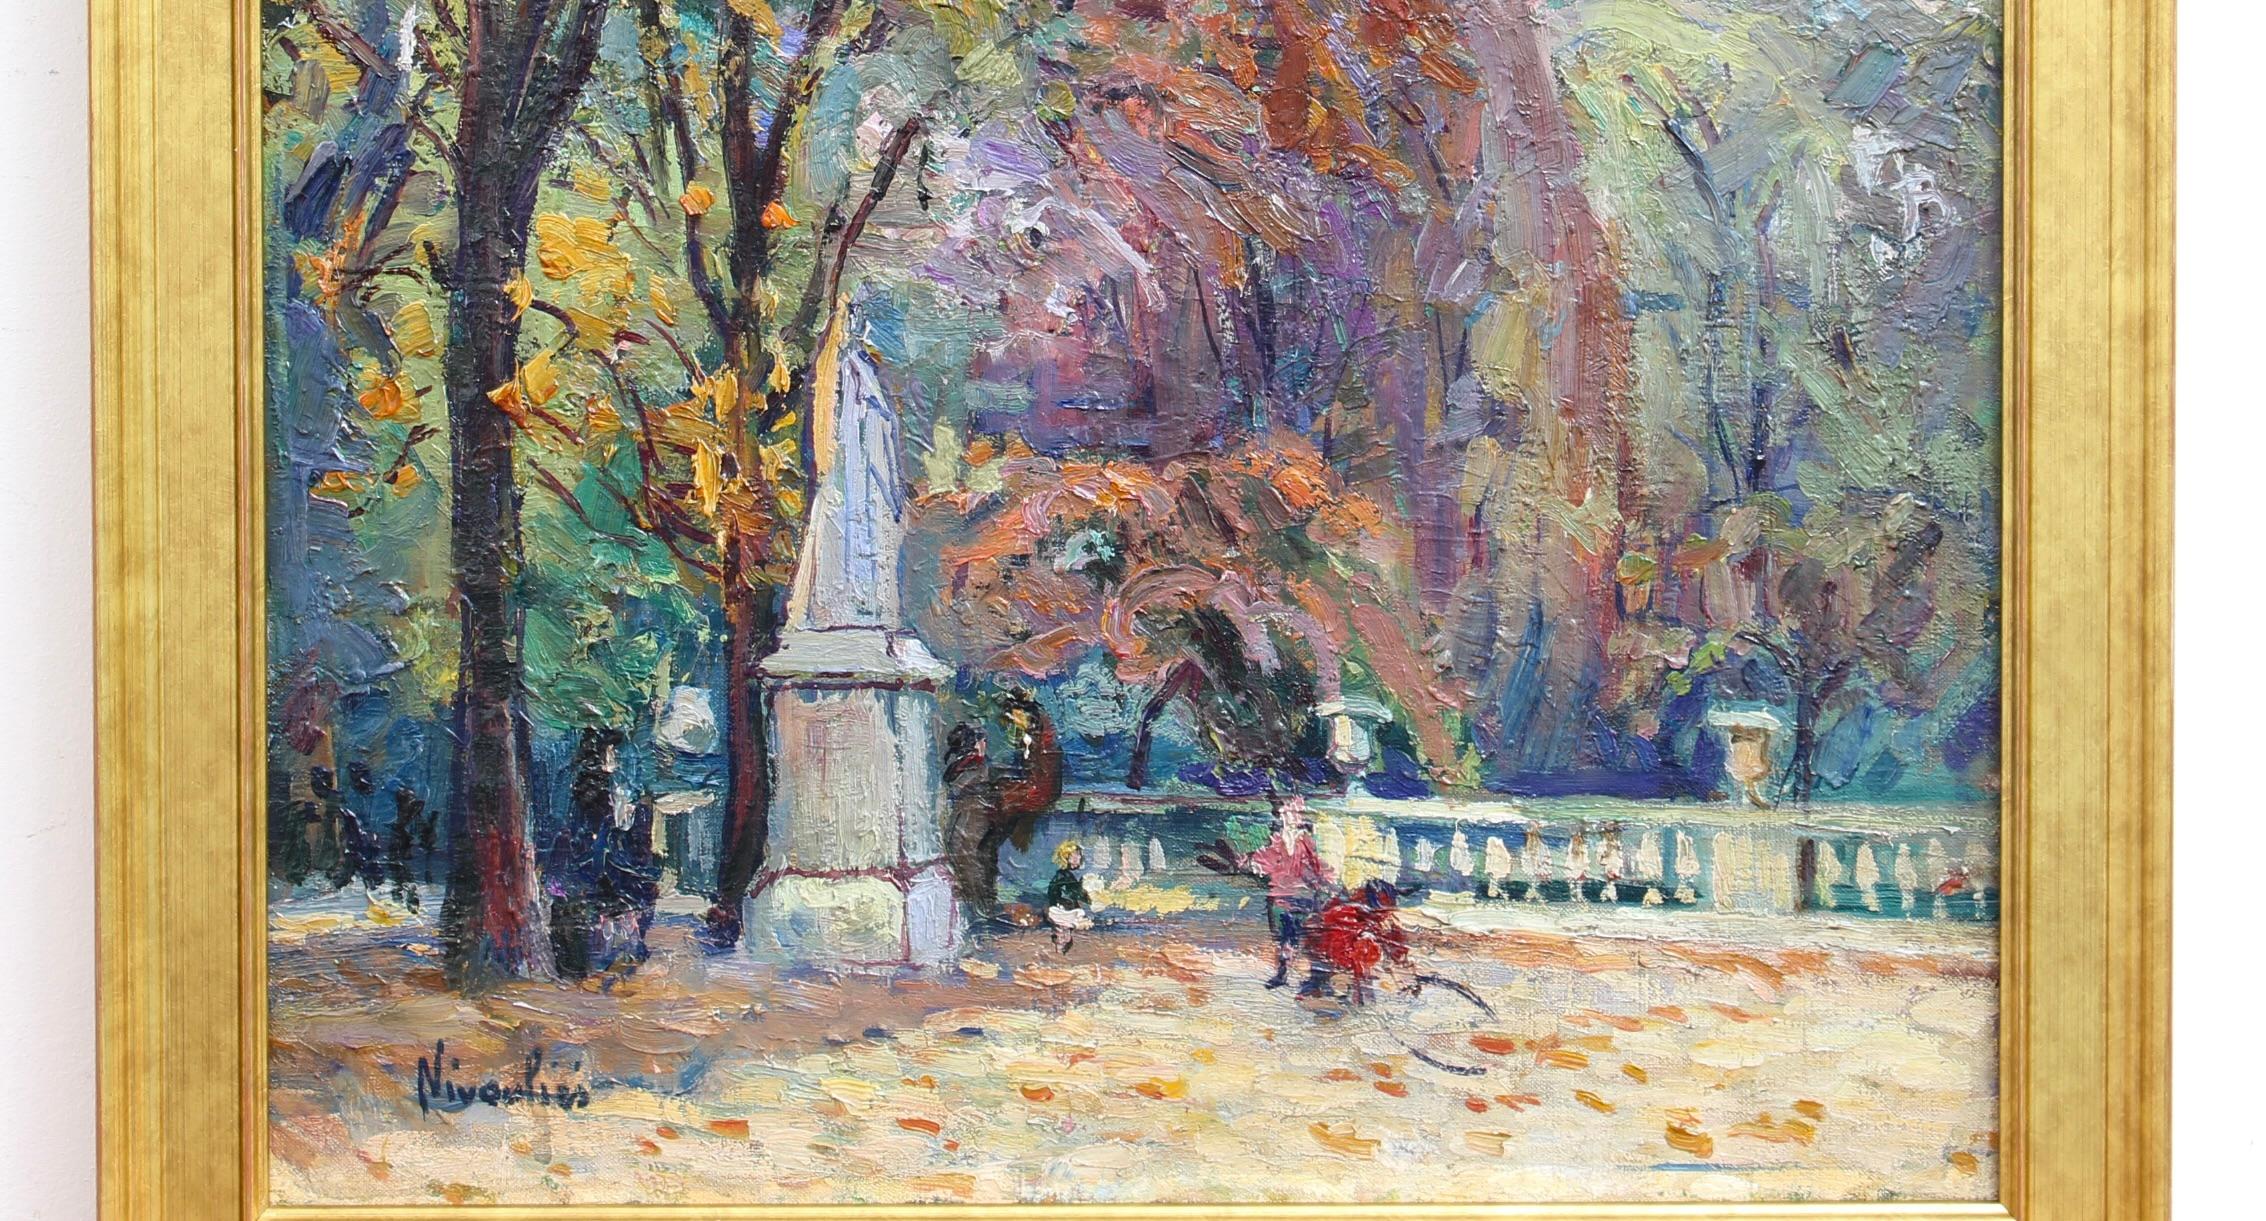 Le Jardin du Luxembourg - Impressionist Painting by Marie-Anne Nivouliès de Pierrefort